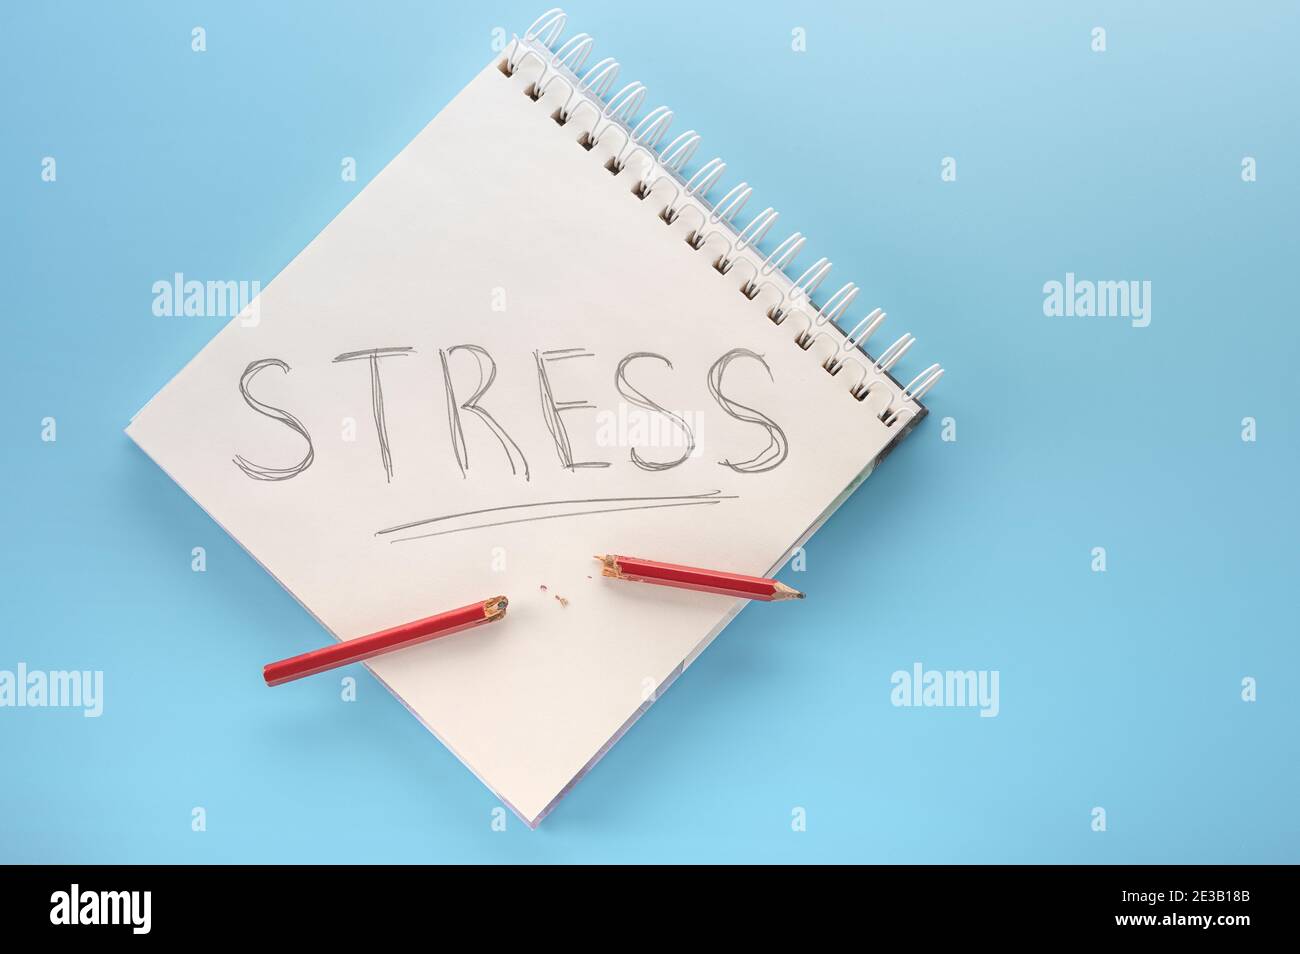 Stressabbau Konzept. Notizblock mit Wort Stress und gebrochenen Bleistift im Falle eines Panikangriffs. Stresskonzept reduzieren. Platz kopieren Stockfoto